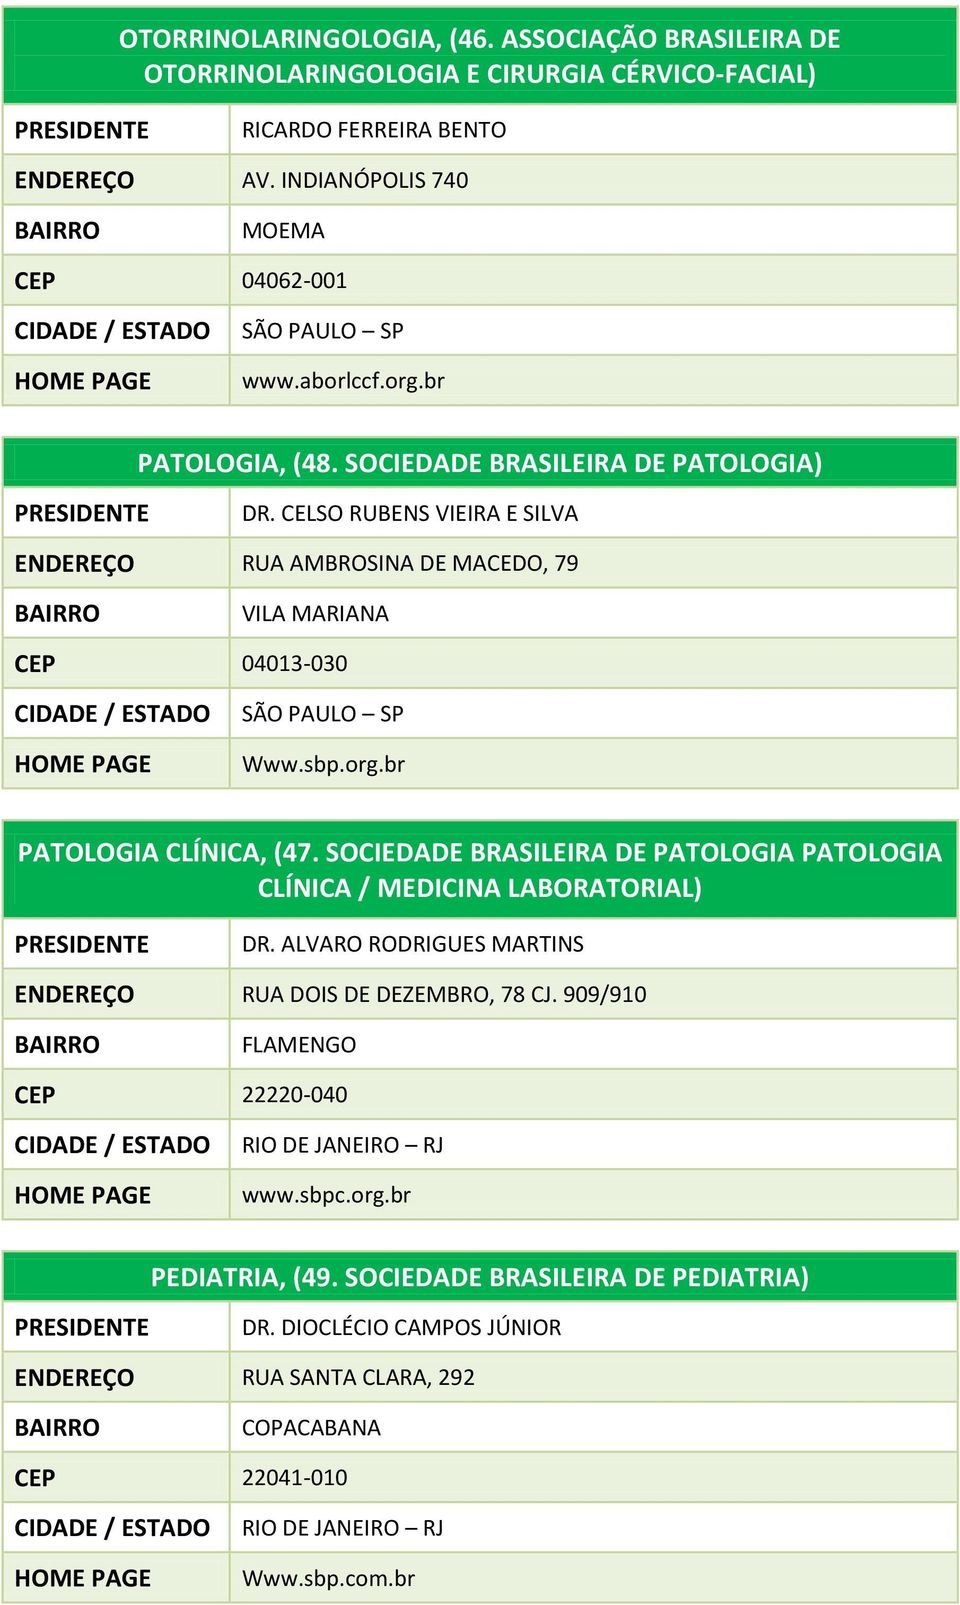 SOCIEDADE BRASILEIRA DE PATOLOGIA PATOLOGIA CLÍNICA / MEDICINA LABORATORIAL) DR. ALVARO RODRIGUES MARTINS RUA DOIS DE DEZEMBRO, 78 CJ. 909/910 FLAMENGO CEP 22220-040 www.